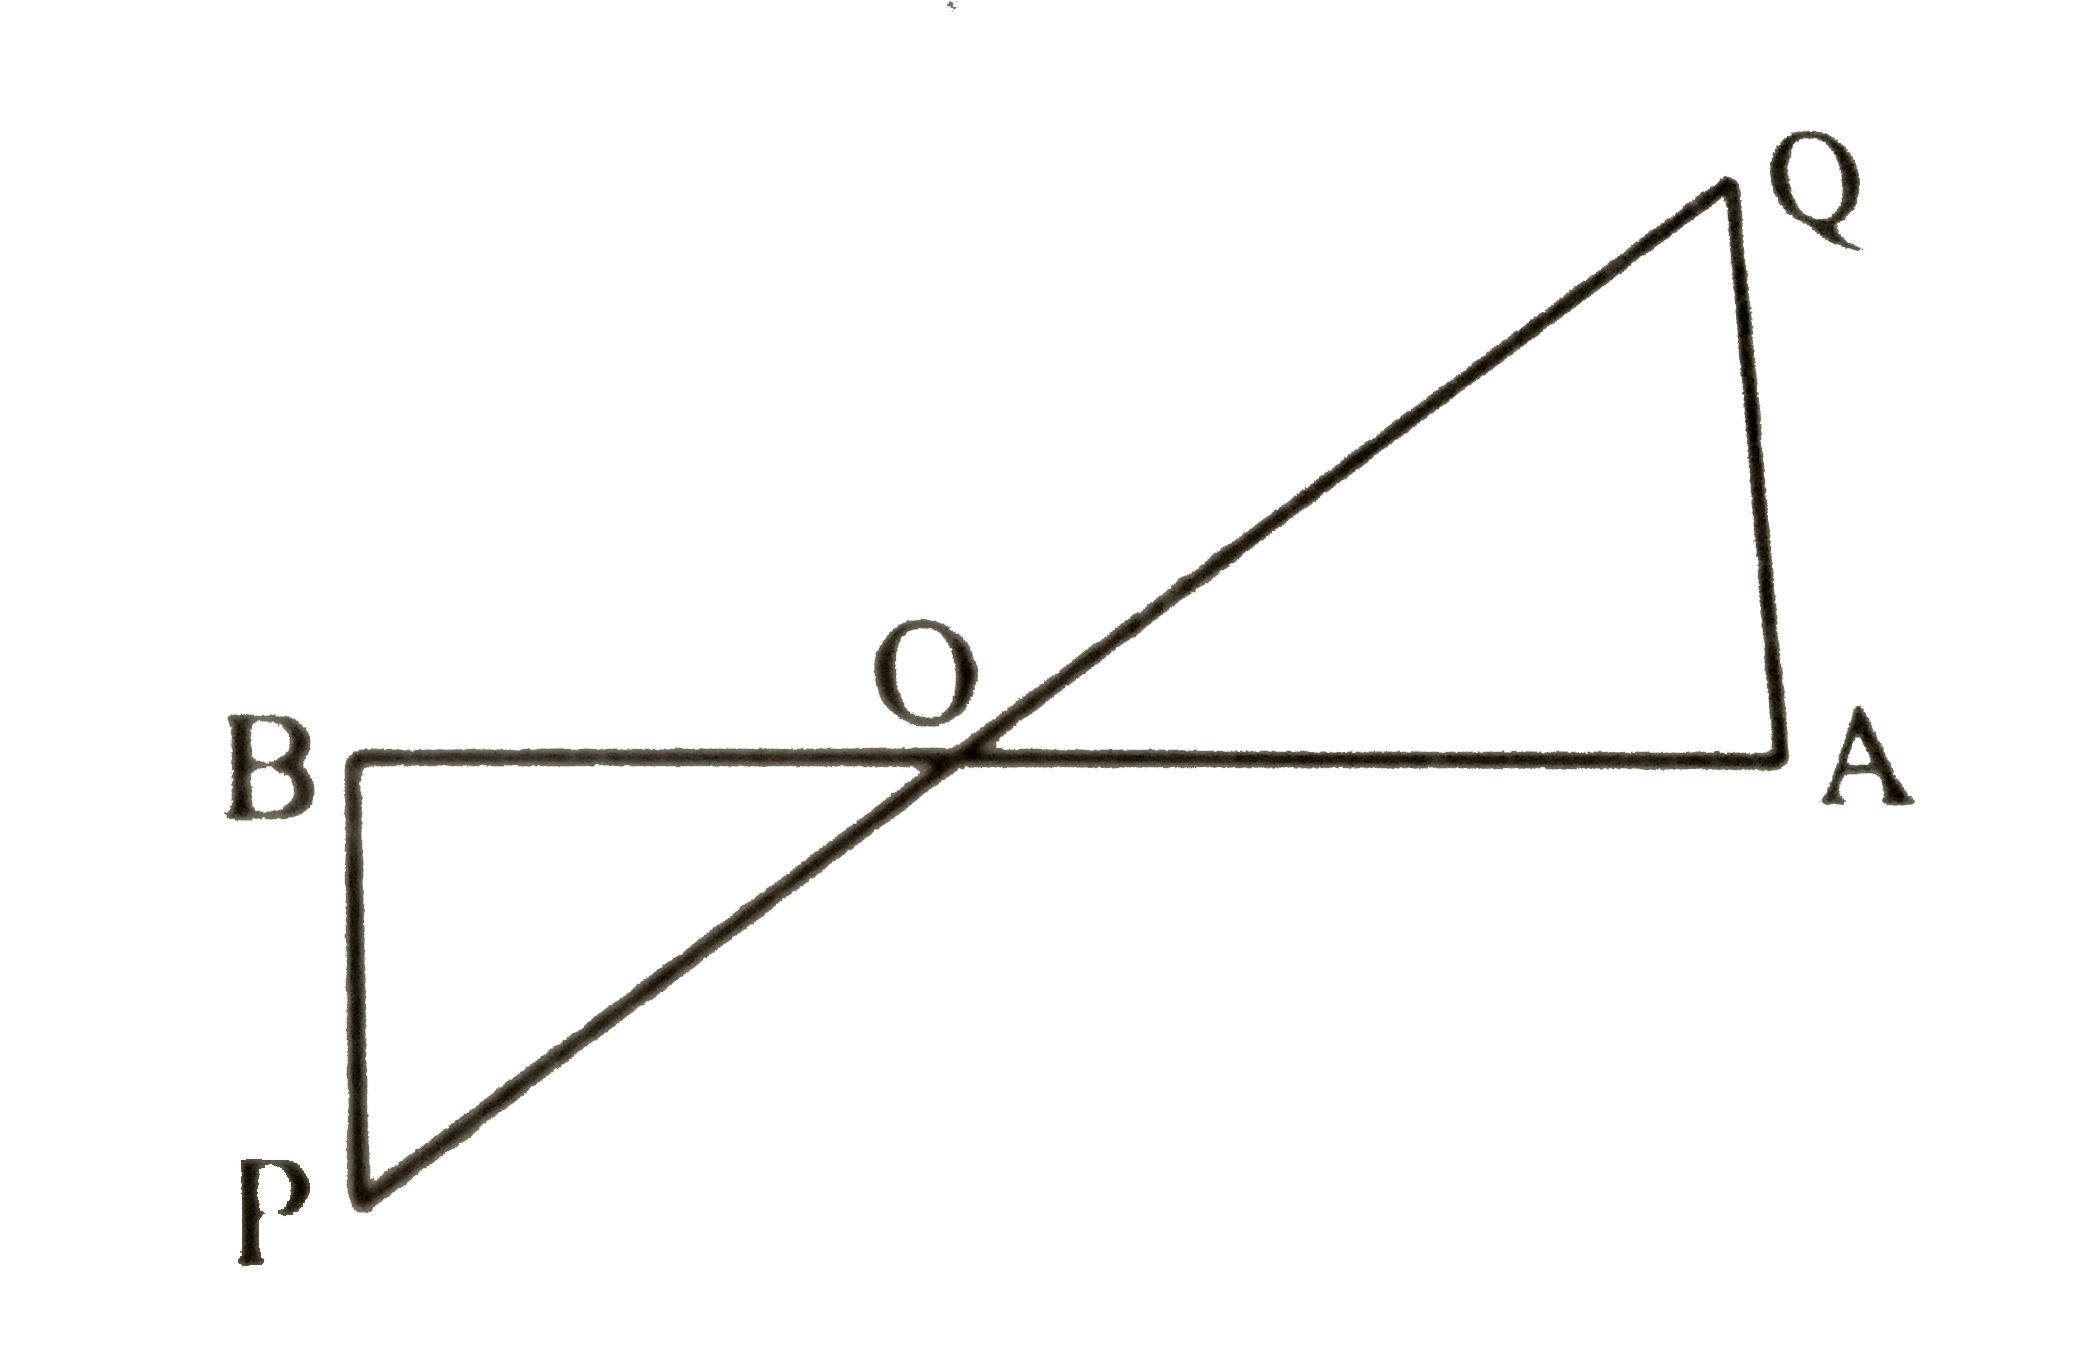 दिये गये चित्र में, PB तथा QA, रेखाखण्ड AB के लंबवत है | यदि PO = 5 सेमी, QO = 7 सेमी तथा triangle POB का क्षेत्रफल = 150 सेमी